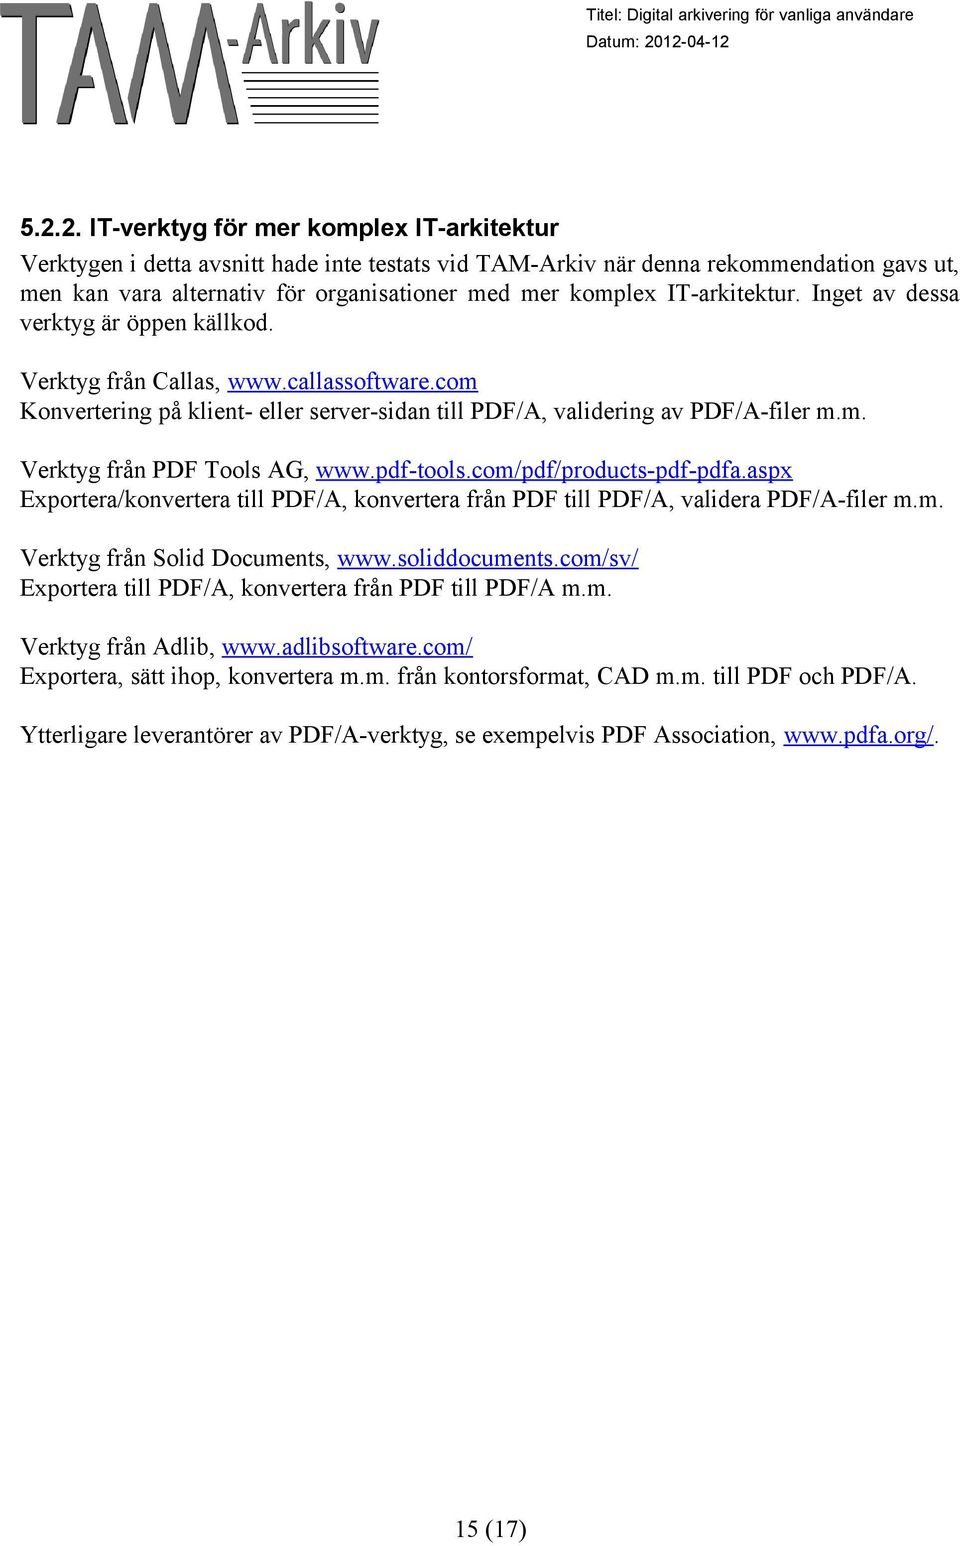 pdf-tools.com/pdf/products-pdf-pdfa.aspx Exportera/konvertera till PDF/A, konvertera från PDF till PDF/A, validera PDF/A-filer m.m. Verktyg från Solid Documents, www.soliddocuments.